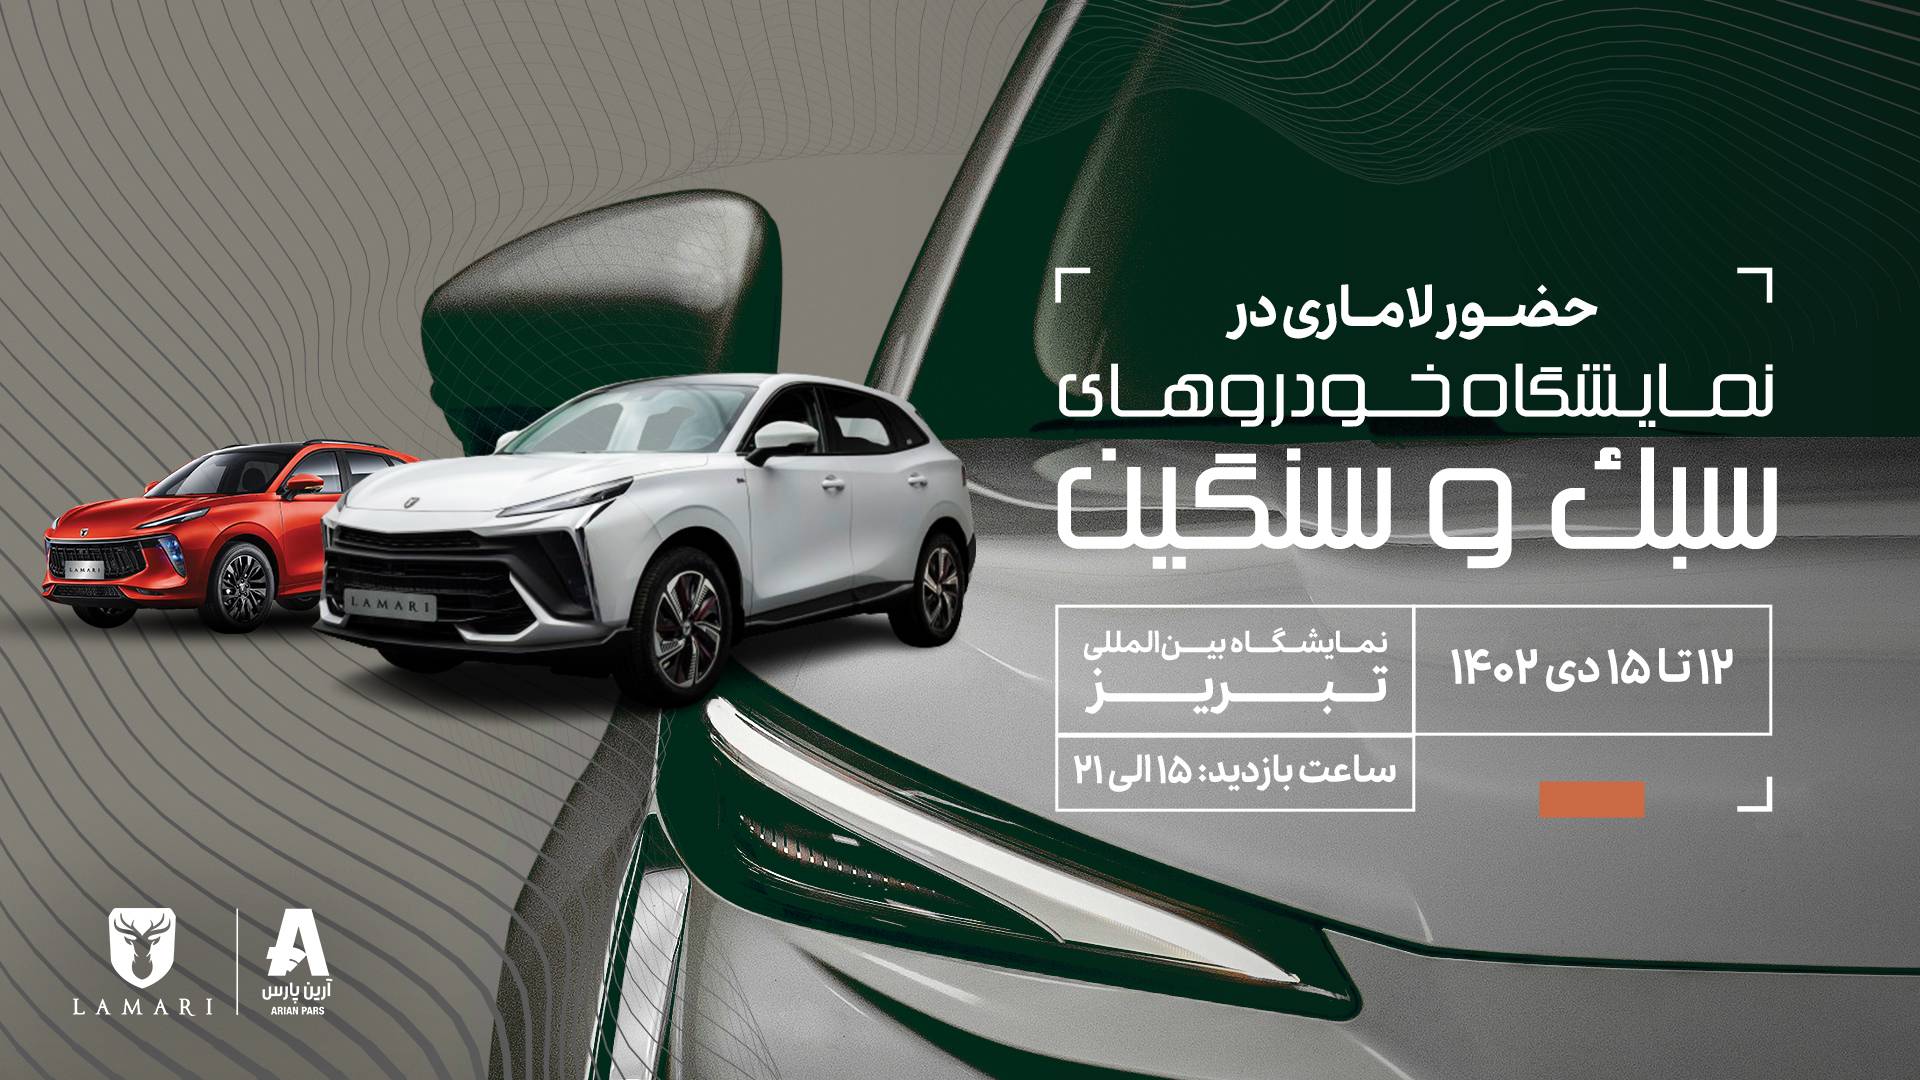 نمایش محصول جدید لاماری در نمایشگاه خودرو تبریز